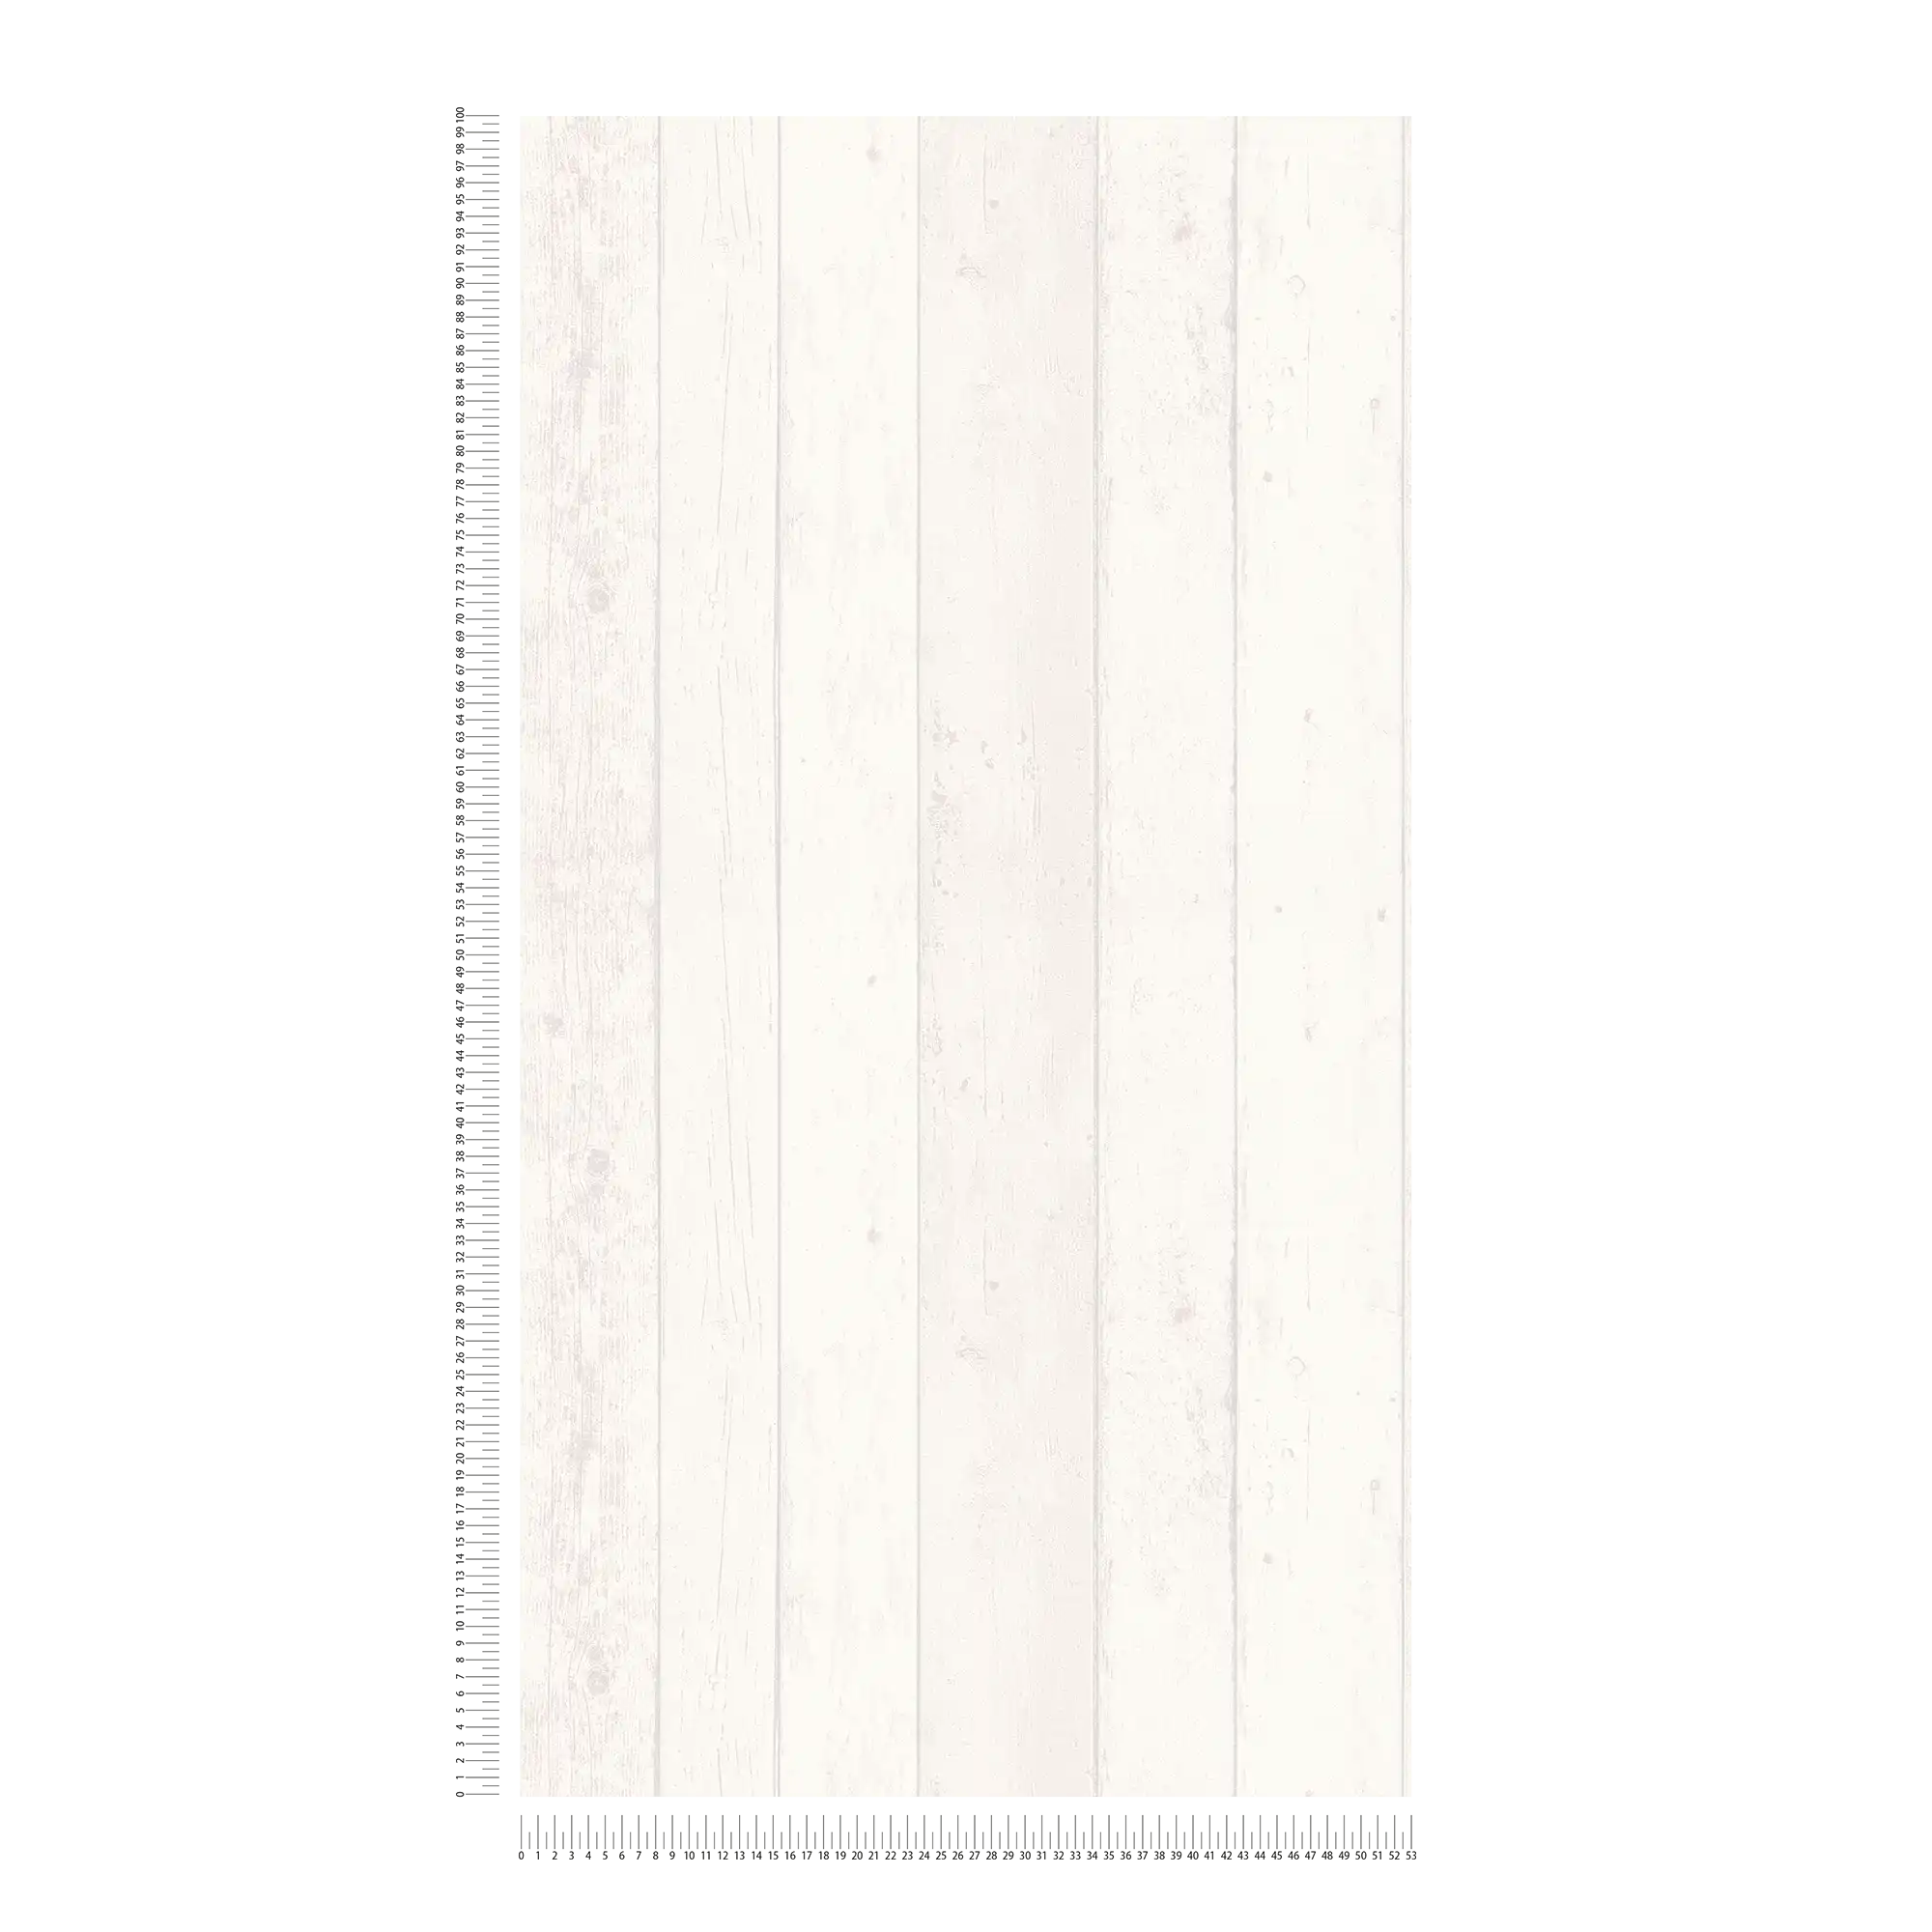             Behang met houteffect in Shabby Chic stijl - wit, grijs
        